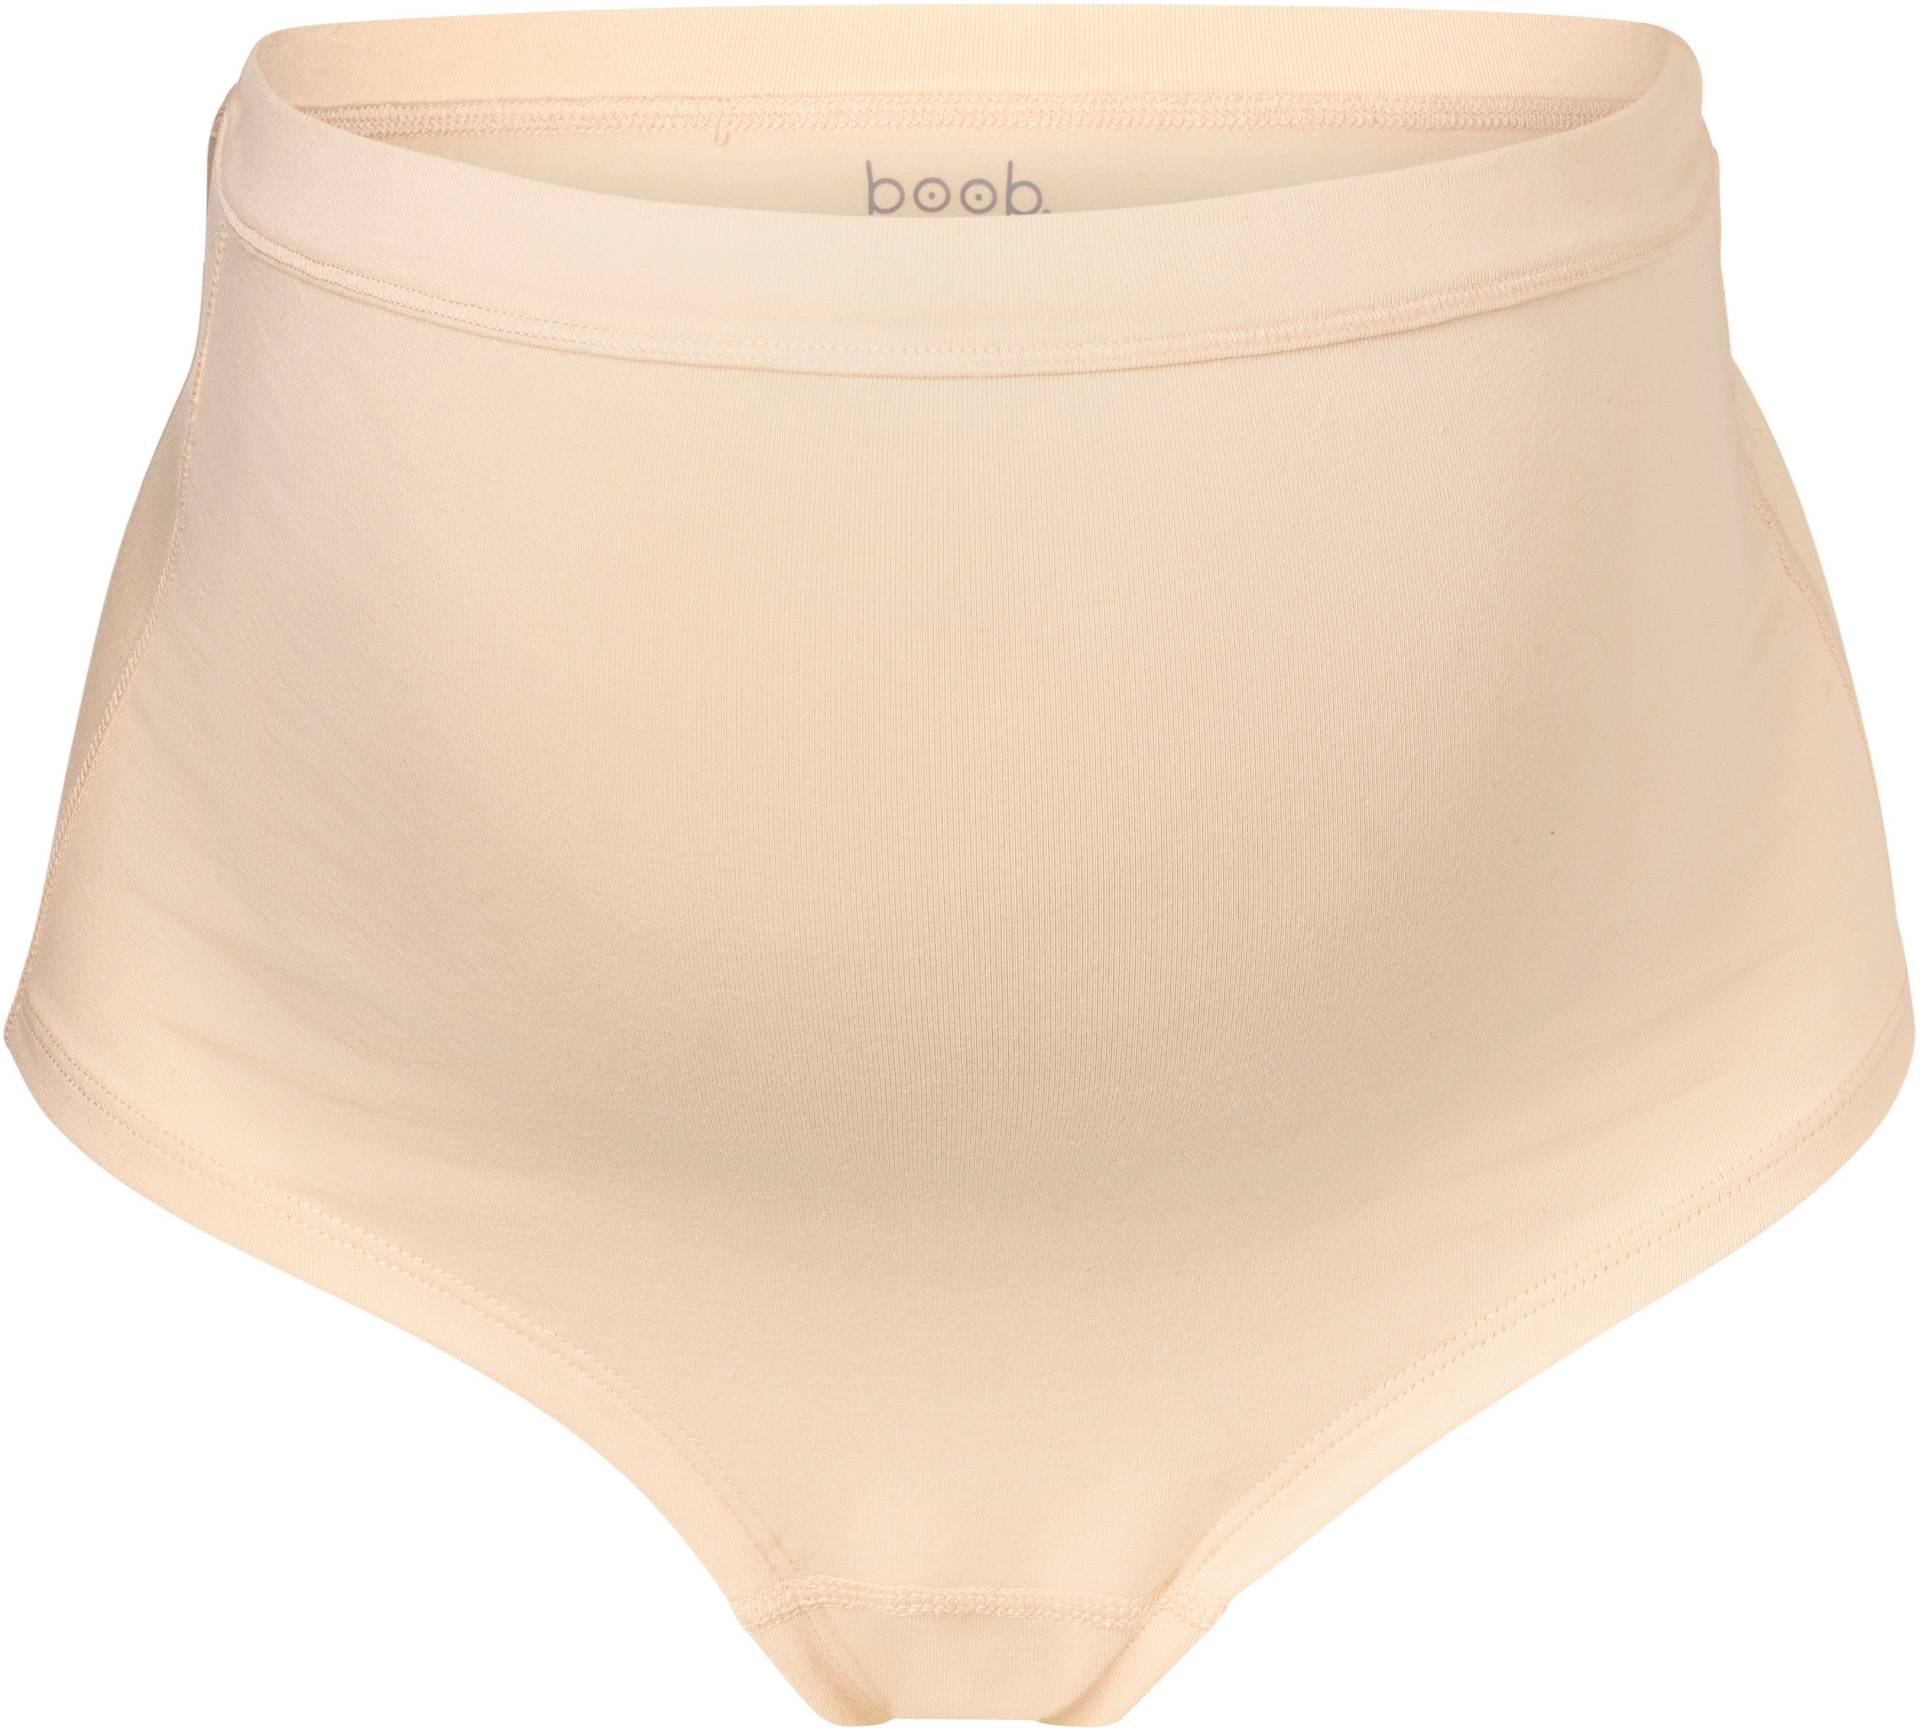 Boob Essentials Umstandunterhose, Beige, L von Boob